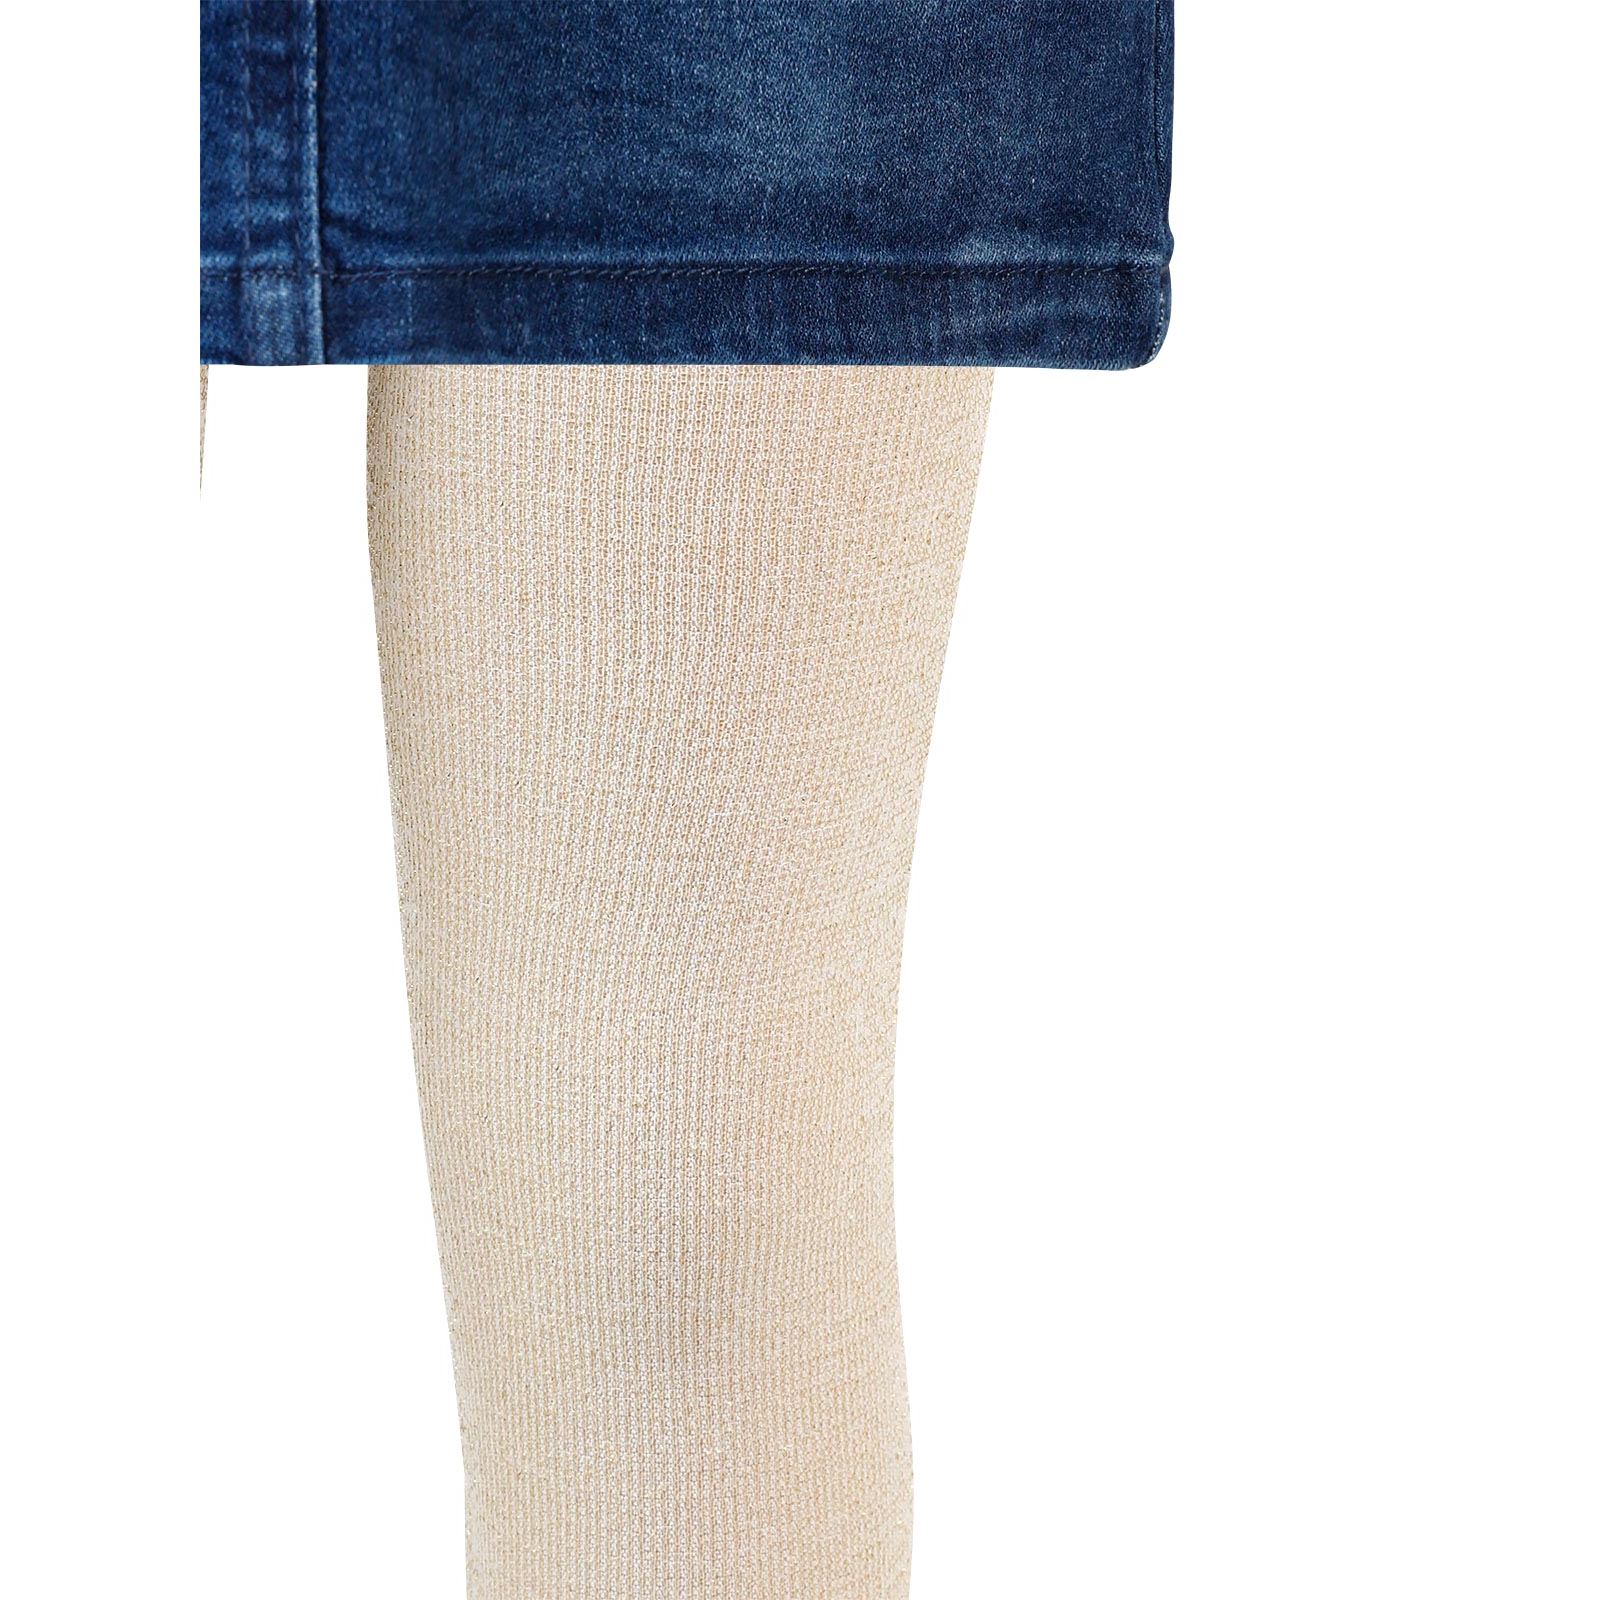 Artı Kız Çocuk Taçlı Külotlu Çorap 1-9 Yaş Bej